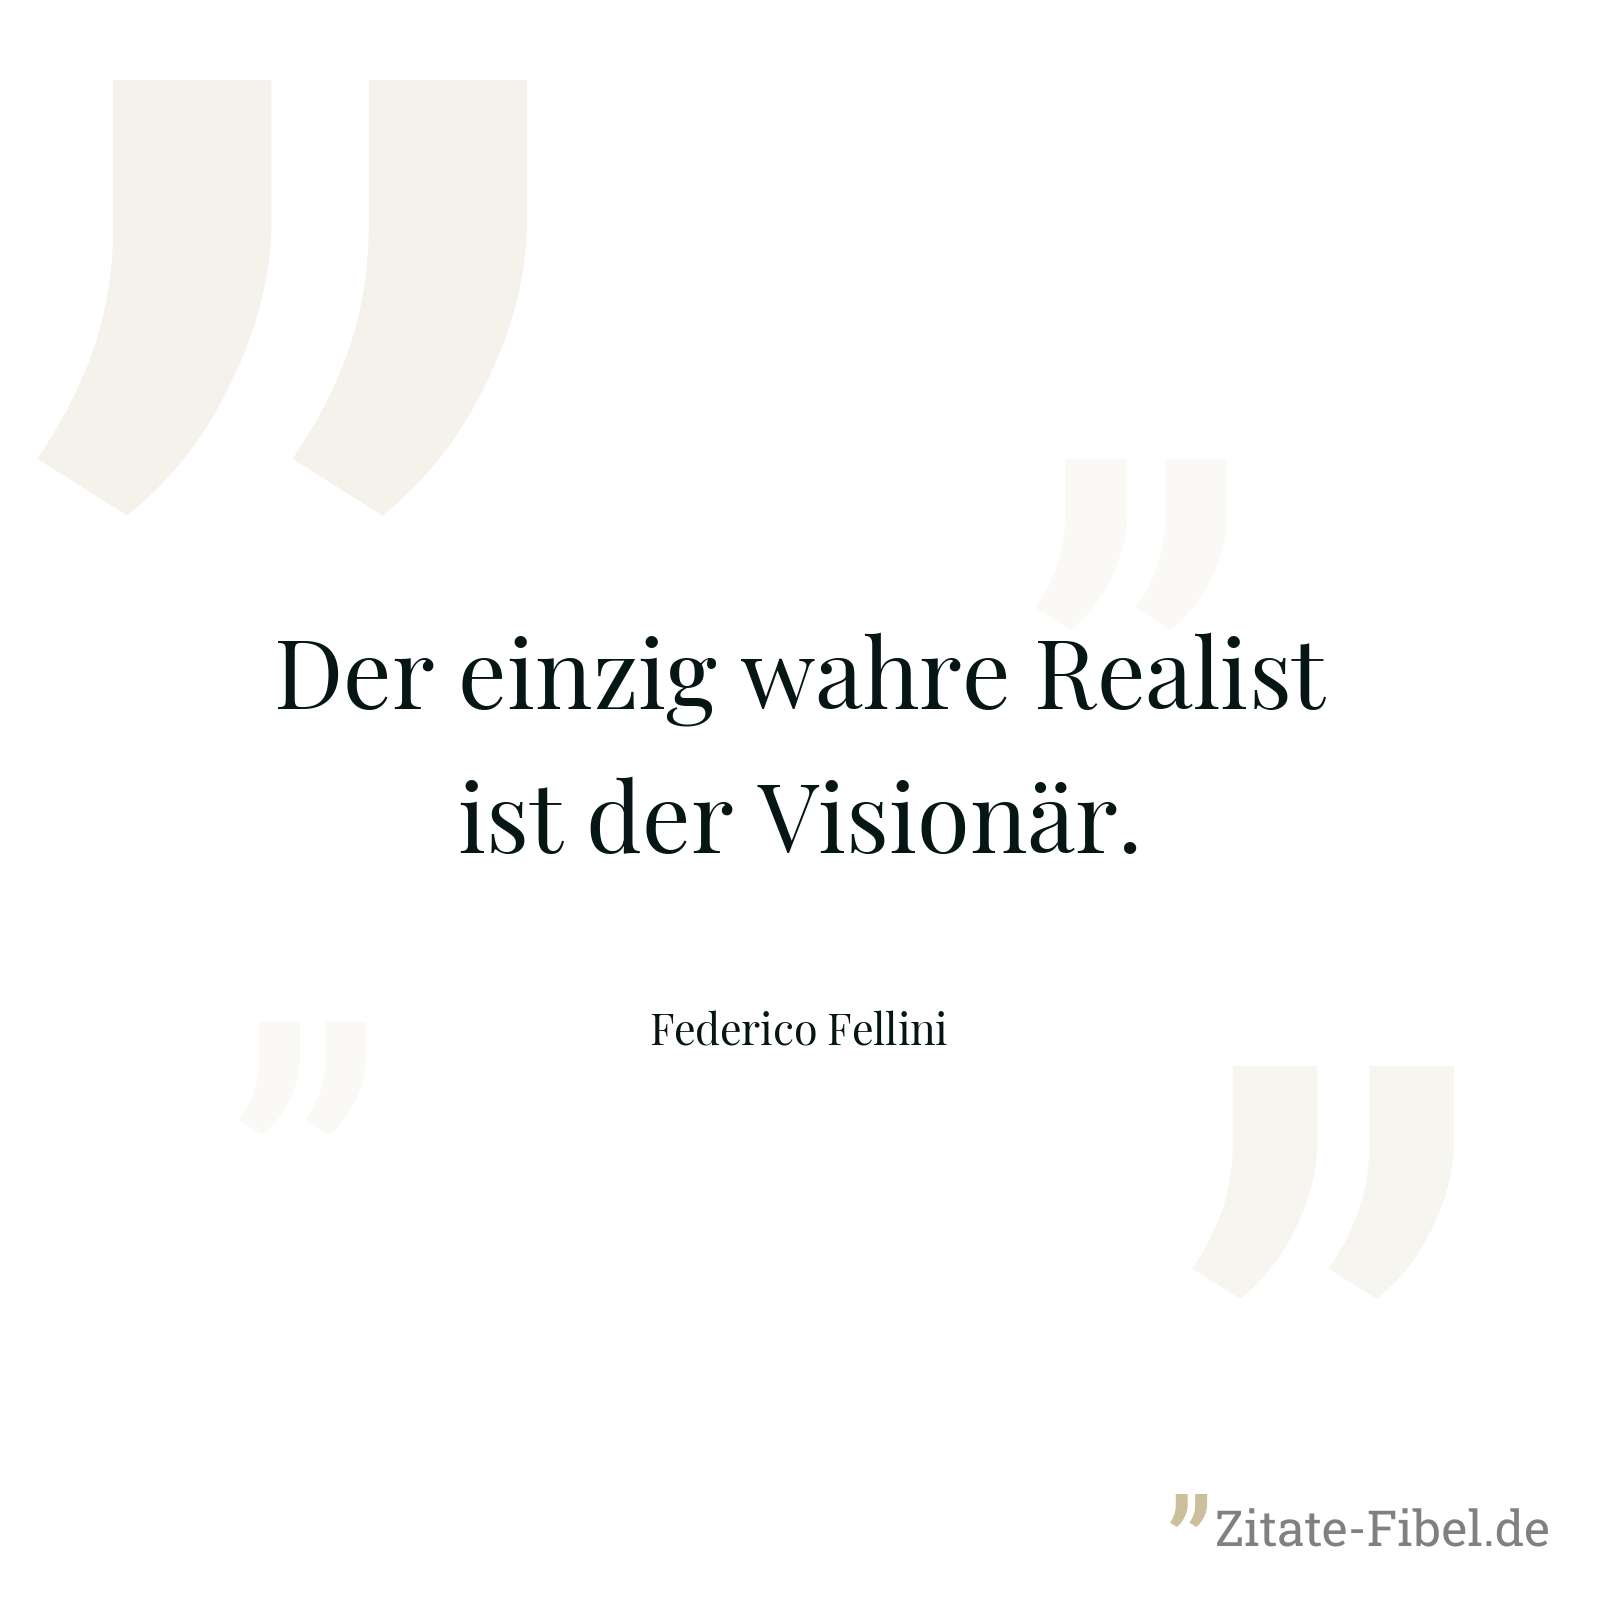 Der einzig wahre Realist ist der Visionär. - Federico Fellini